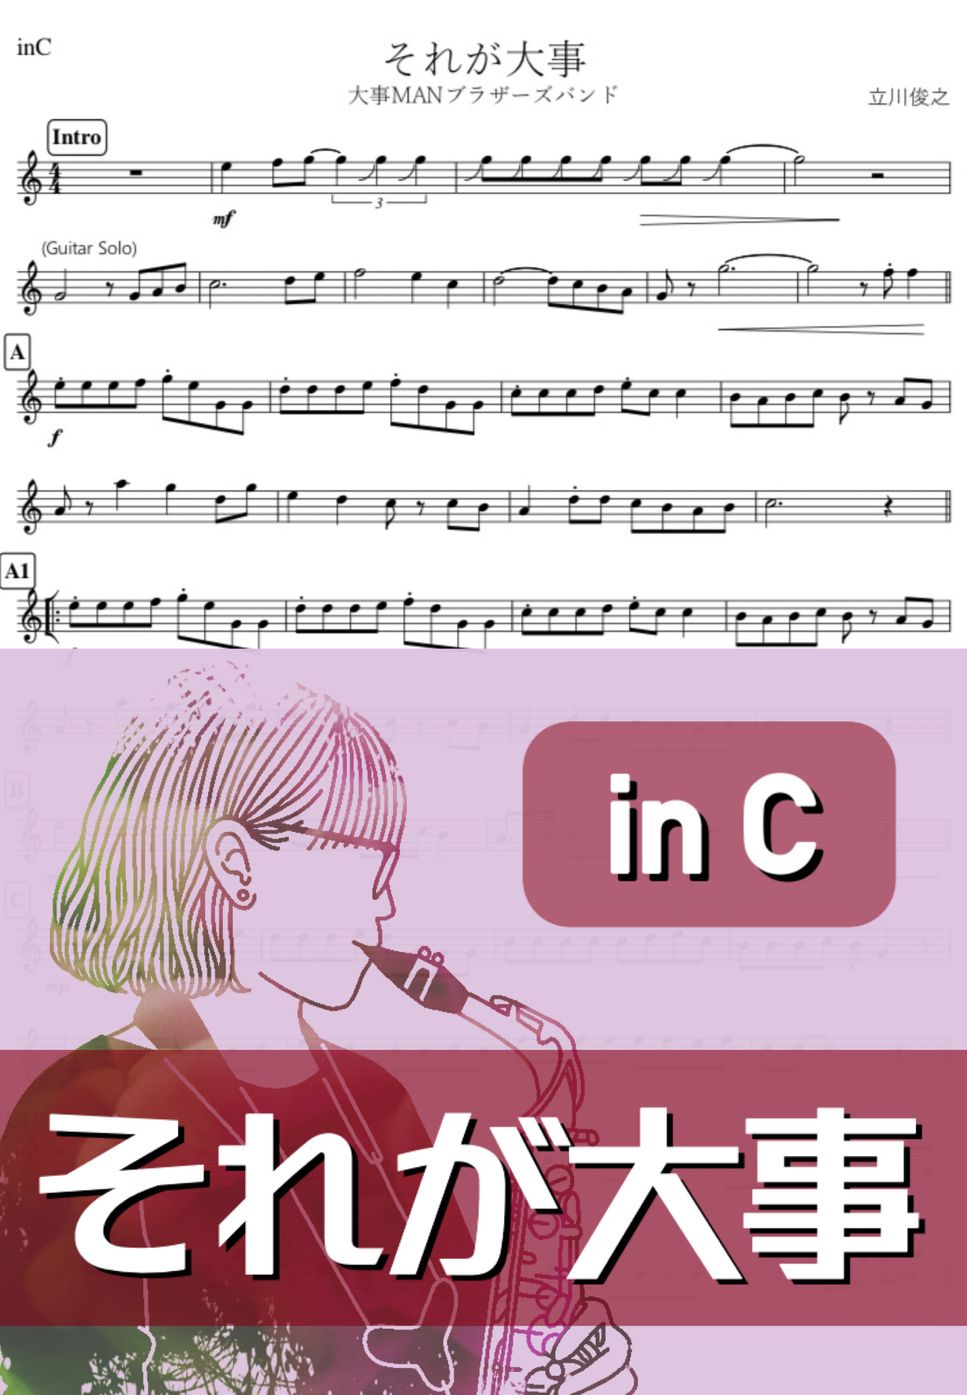 大事MANブラザーズバンド - それが大事 (C) by kanamusic